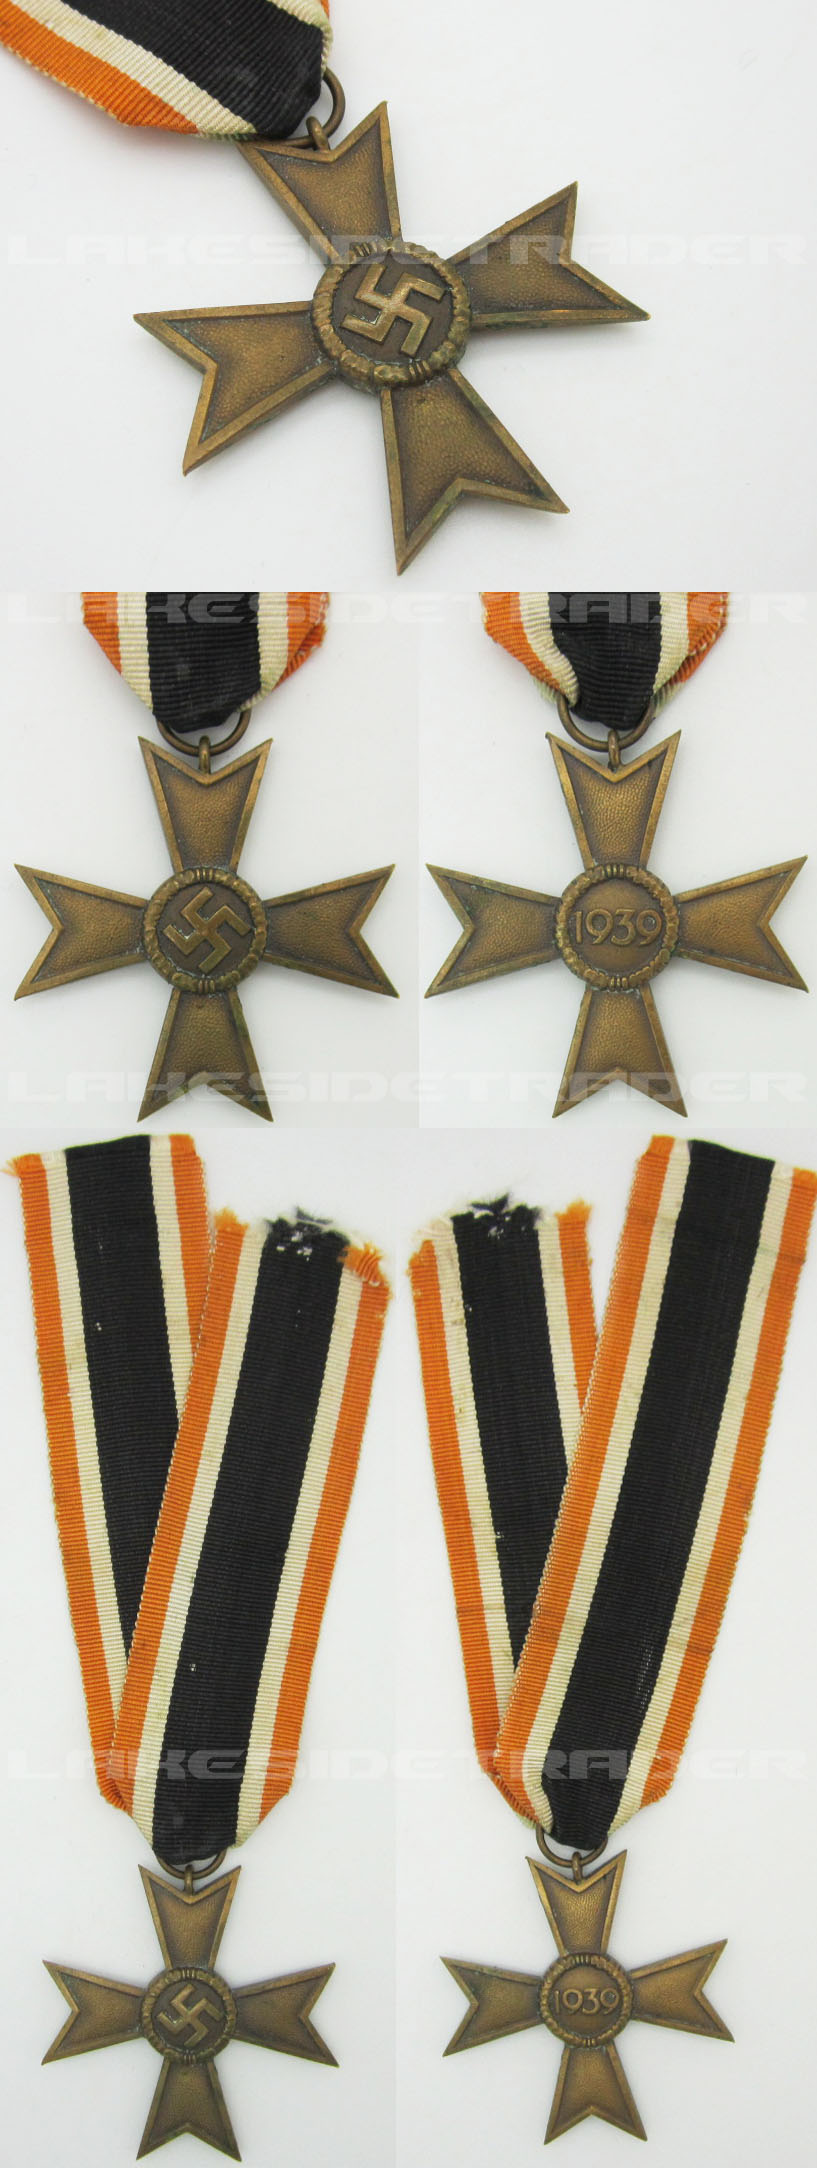 2nd Class War Merit Cross 